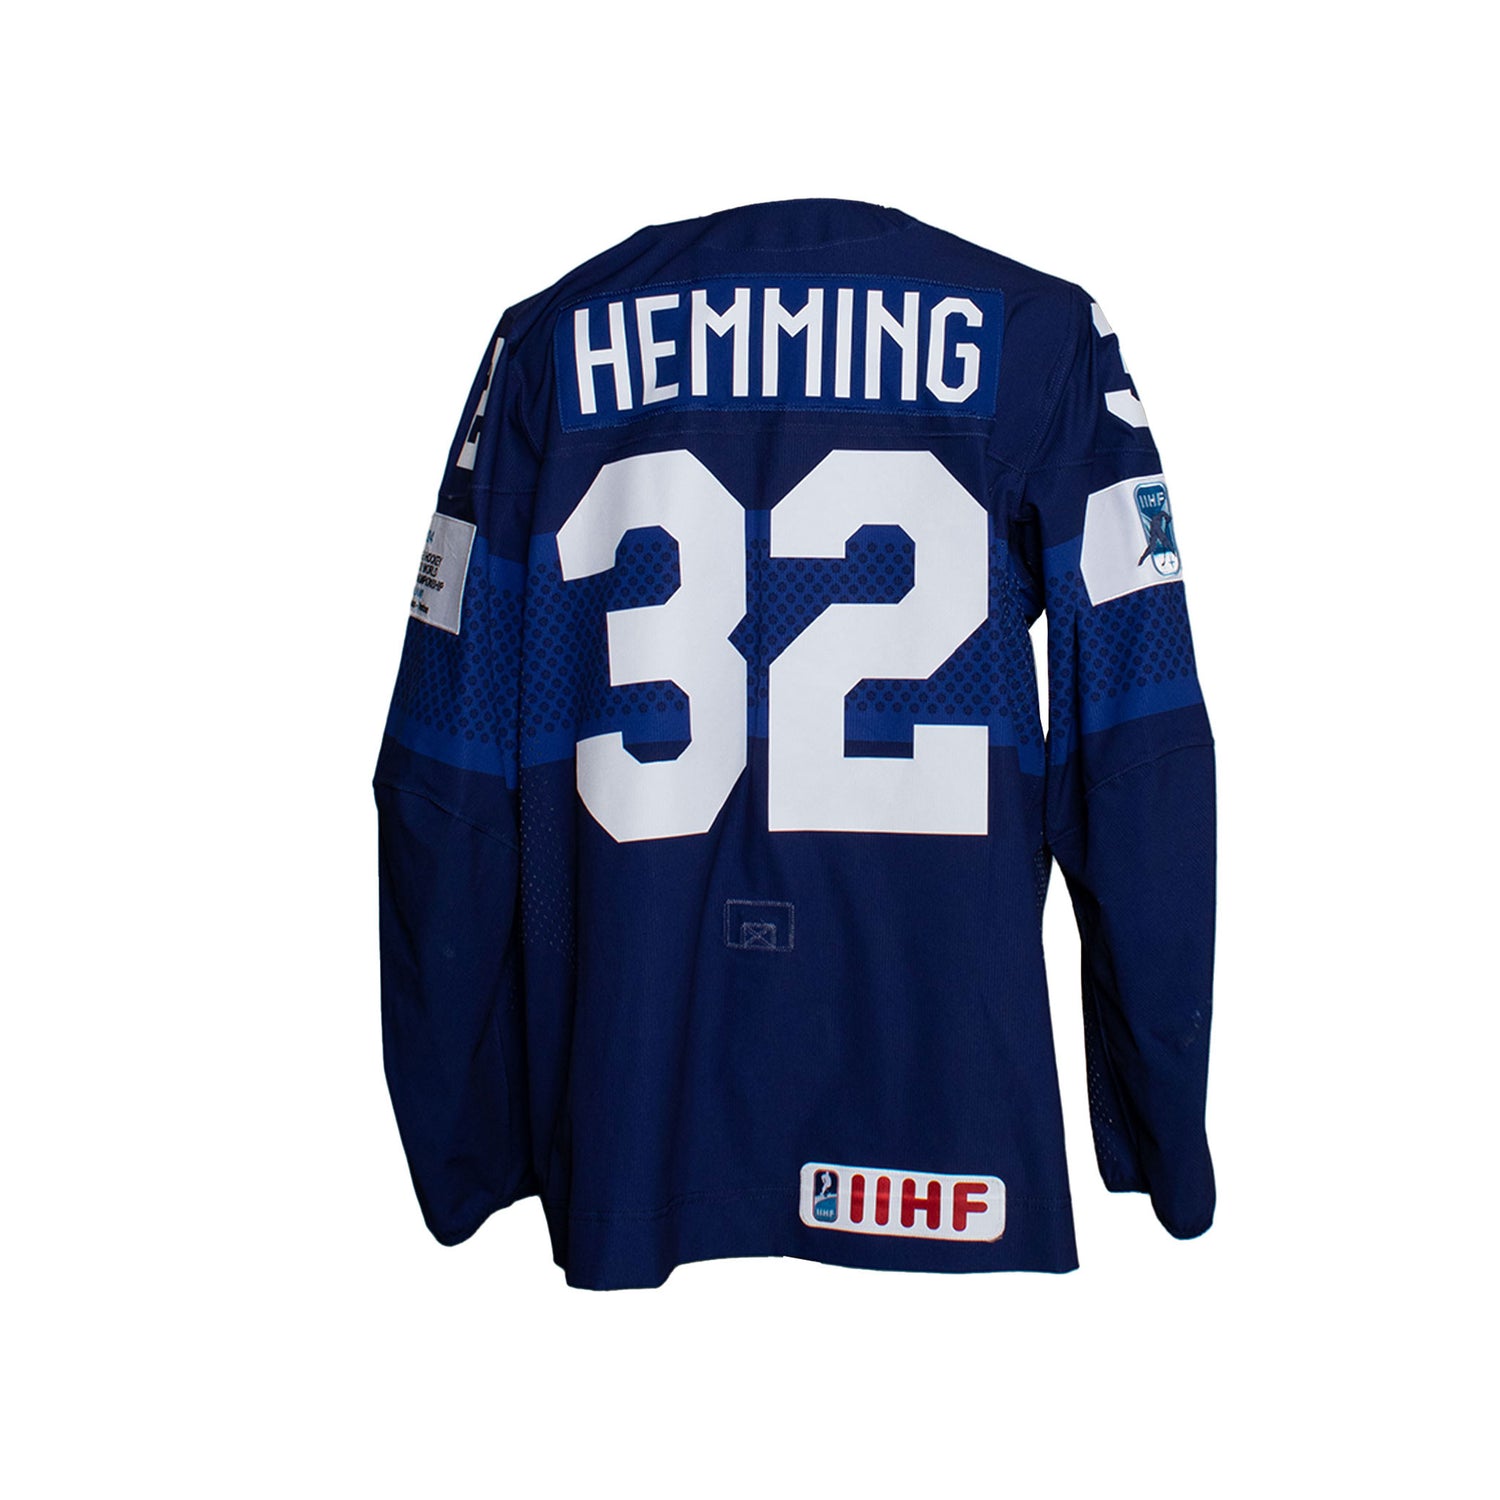 Emil Hemming #32 Game Worn, Home Jersey